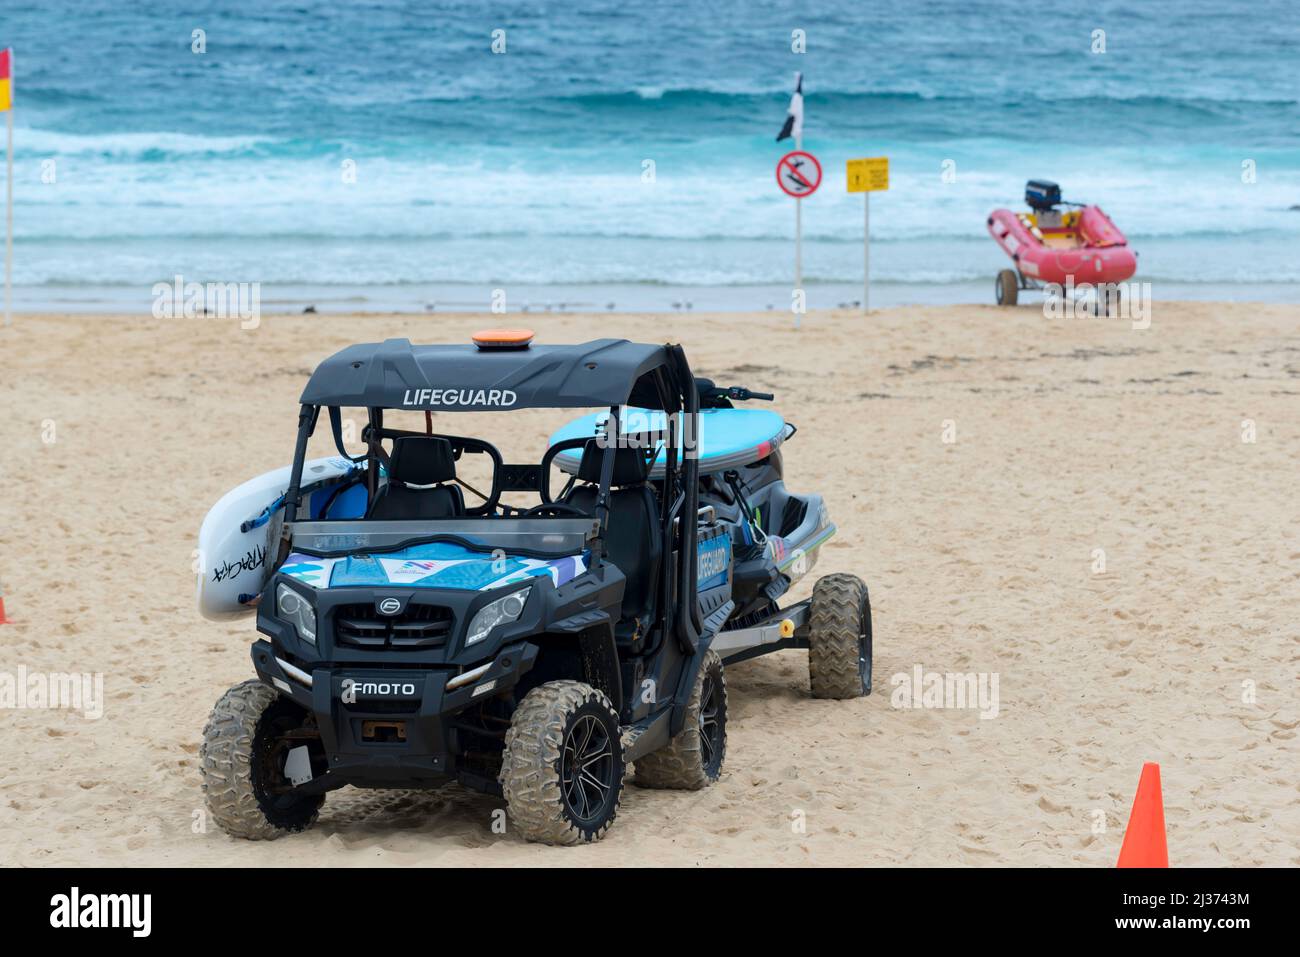 Un CFMOTO UTV (véhicule utilitaire terrain) accroché à un jet ski et avec un plan de sauvetage latéral, se trouve sur Newcastle Beach, en Nouvelle-Galles du Sud, en Australie Banque D'Images